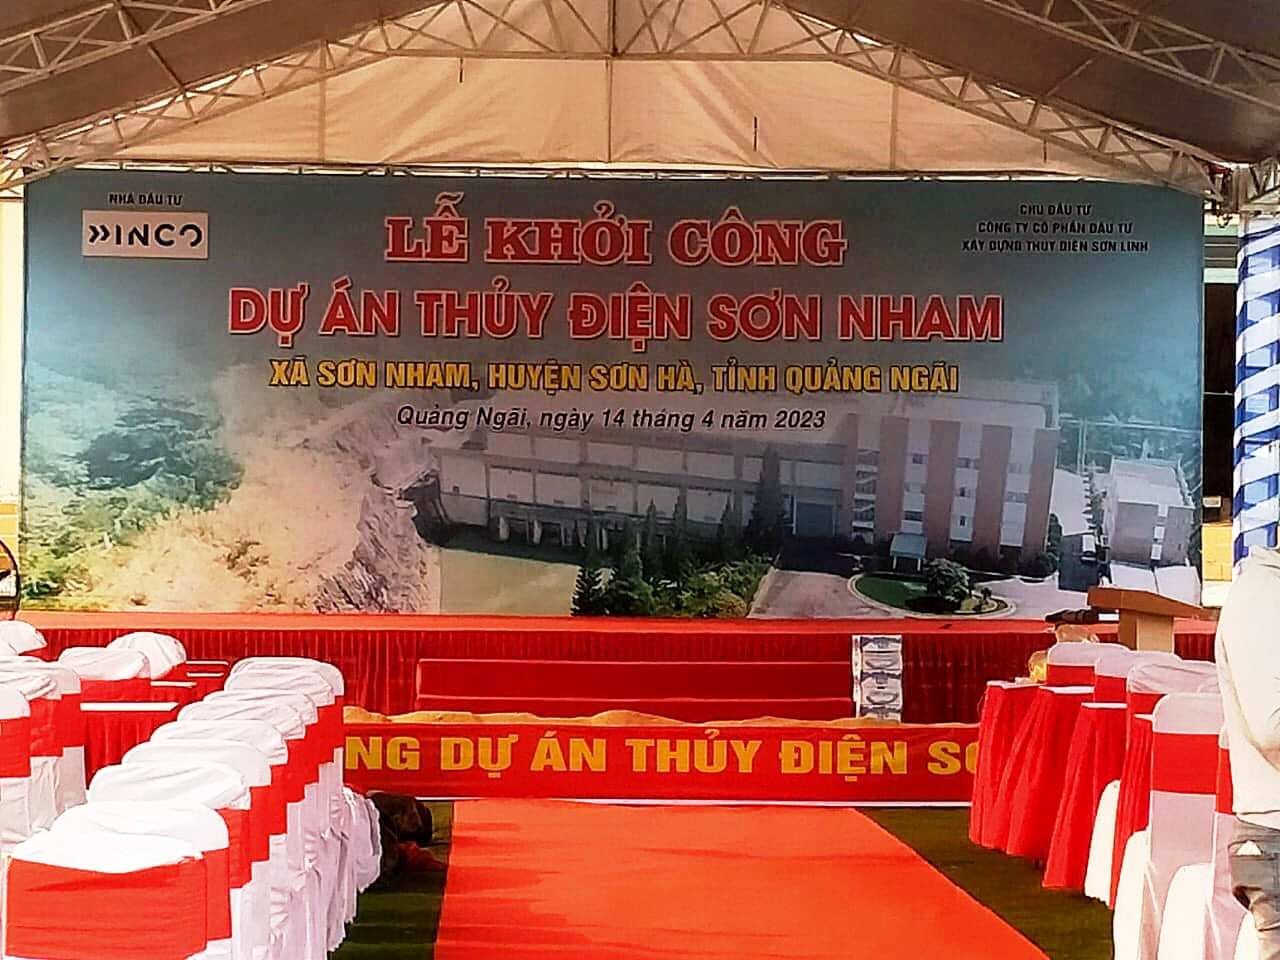 Rạp mà Công ty INCO đã dựng để làm lễ khởi công dự án thuỷ điện Sơn Nham trước khi bị tháo dỡ.Ảnh: Công an huyện Sơn Hà.